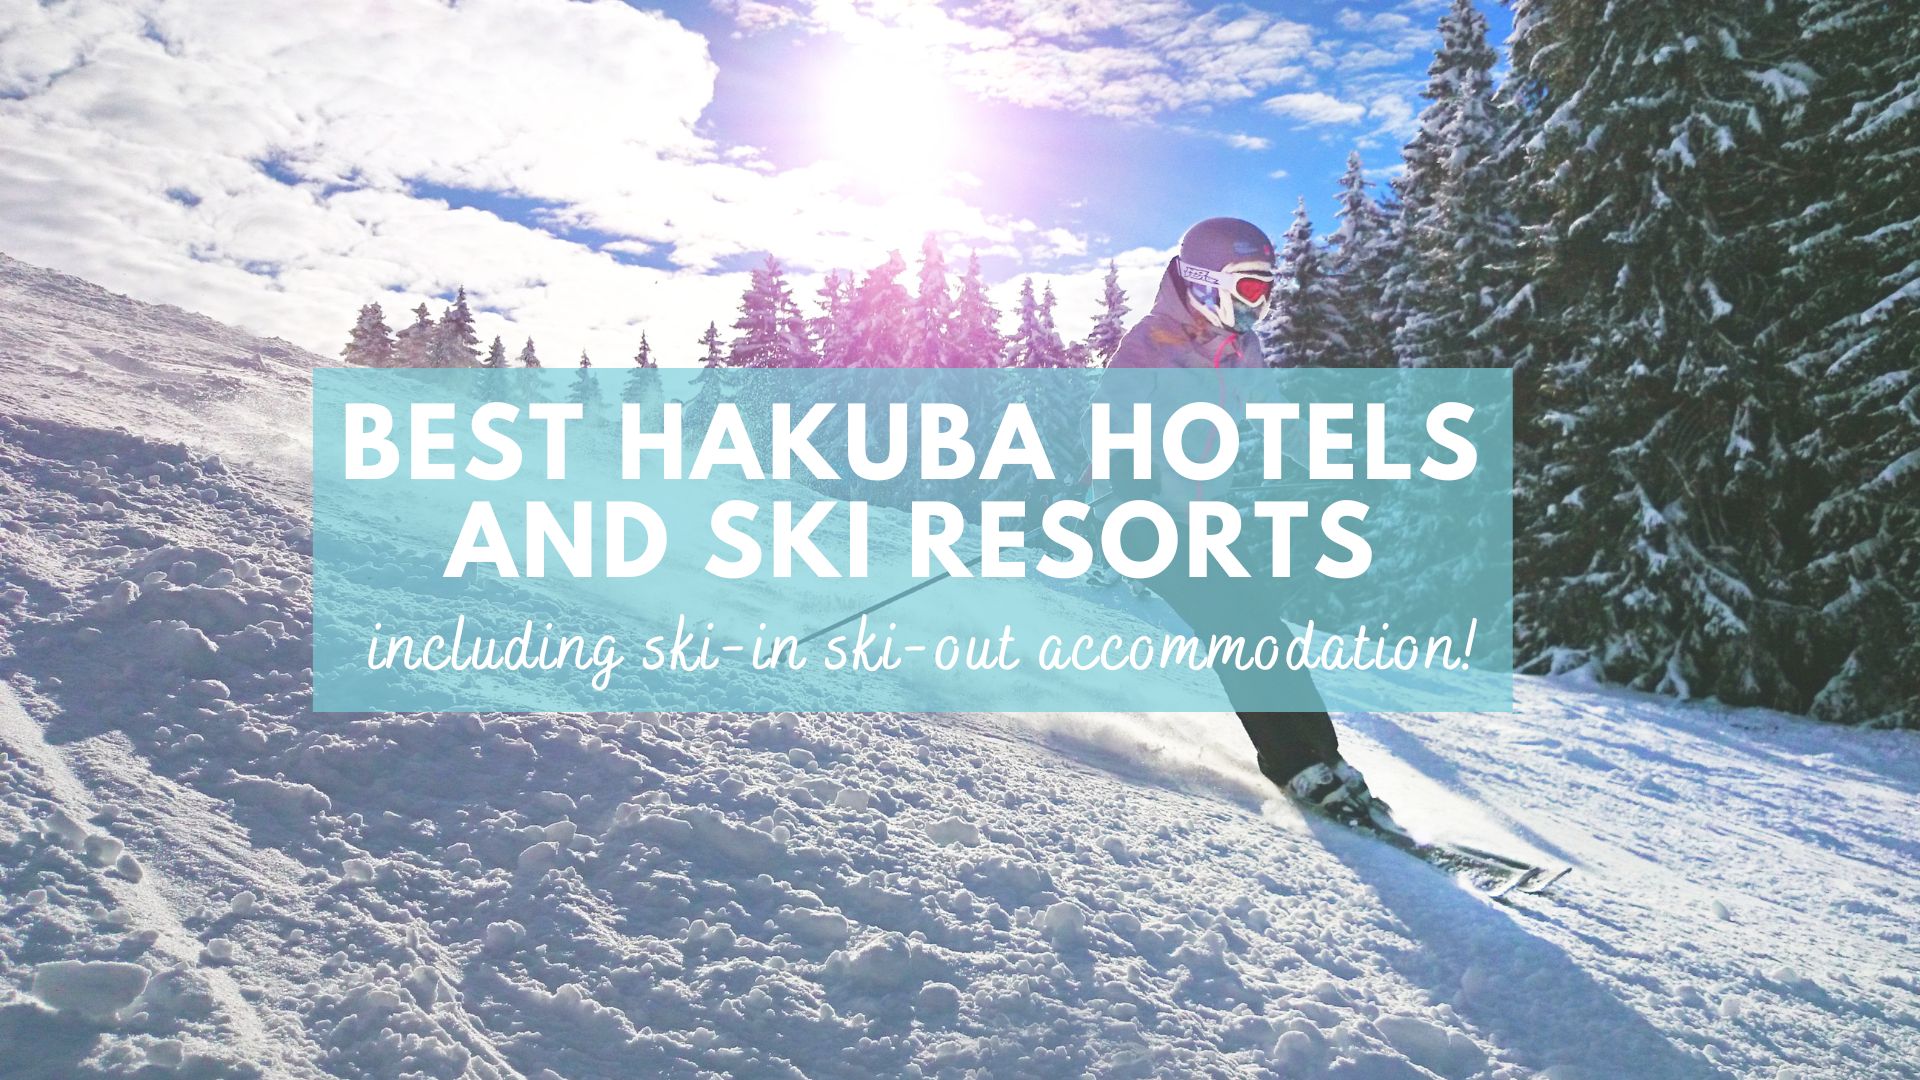 Hakuba accommodation, Best Hakuba hotels, best ski resorts in Hakuba, where to stay in Hakuba, Japan, ski in ski out hotels in Hakuba, Hakuba ski in ski out accommodation cover photo